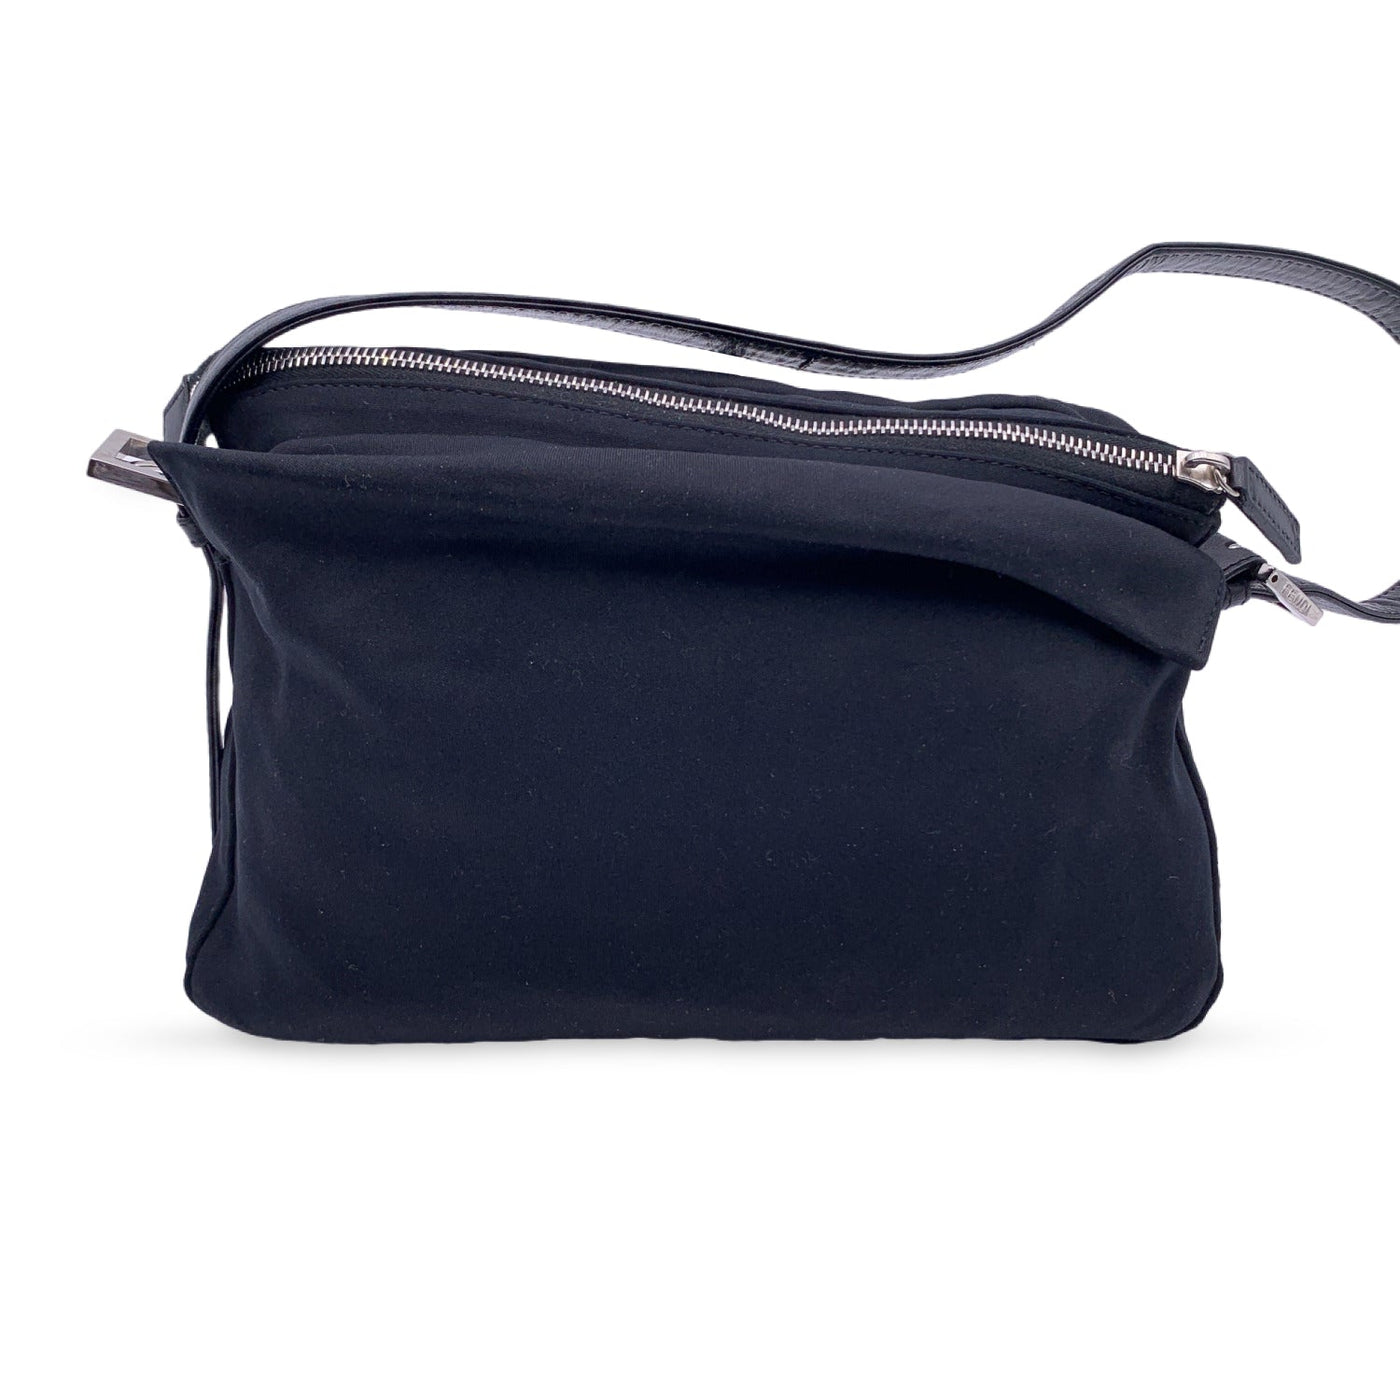 Baguette cloth handbag Fendi Black in Cloth - 29220369